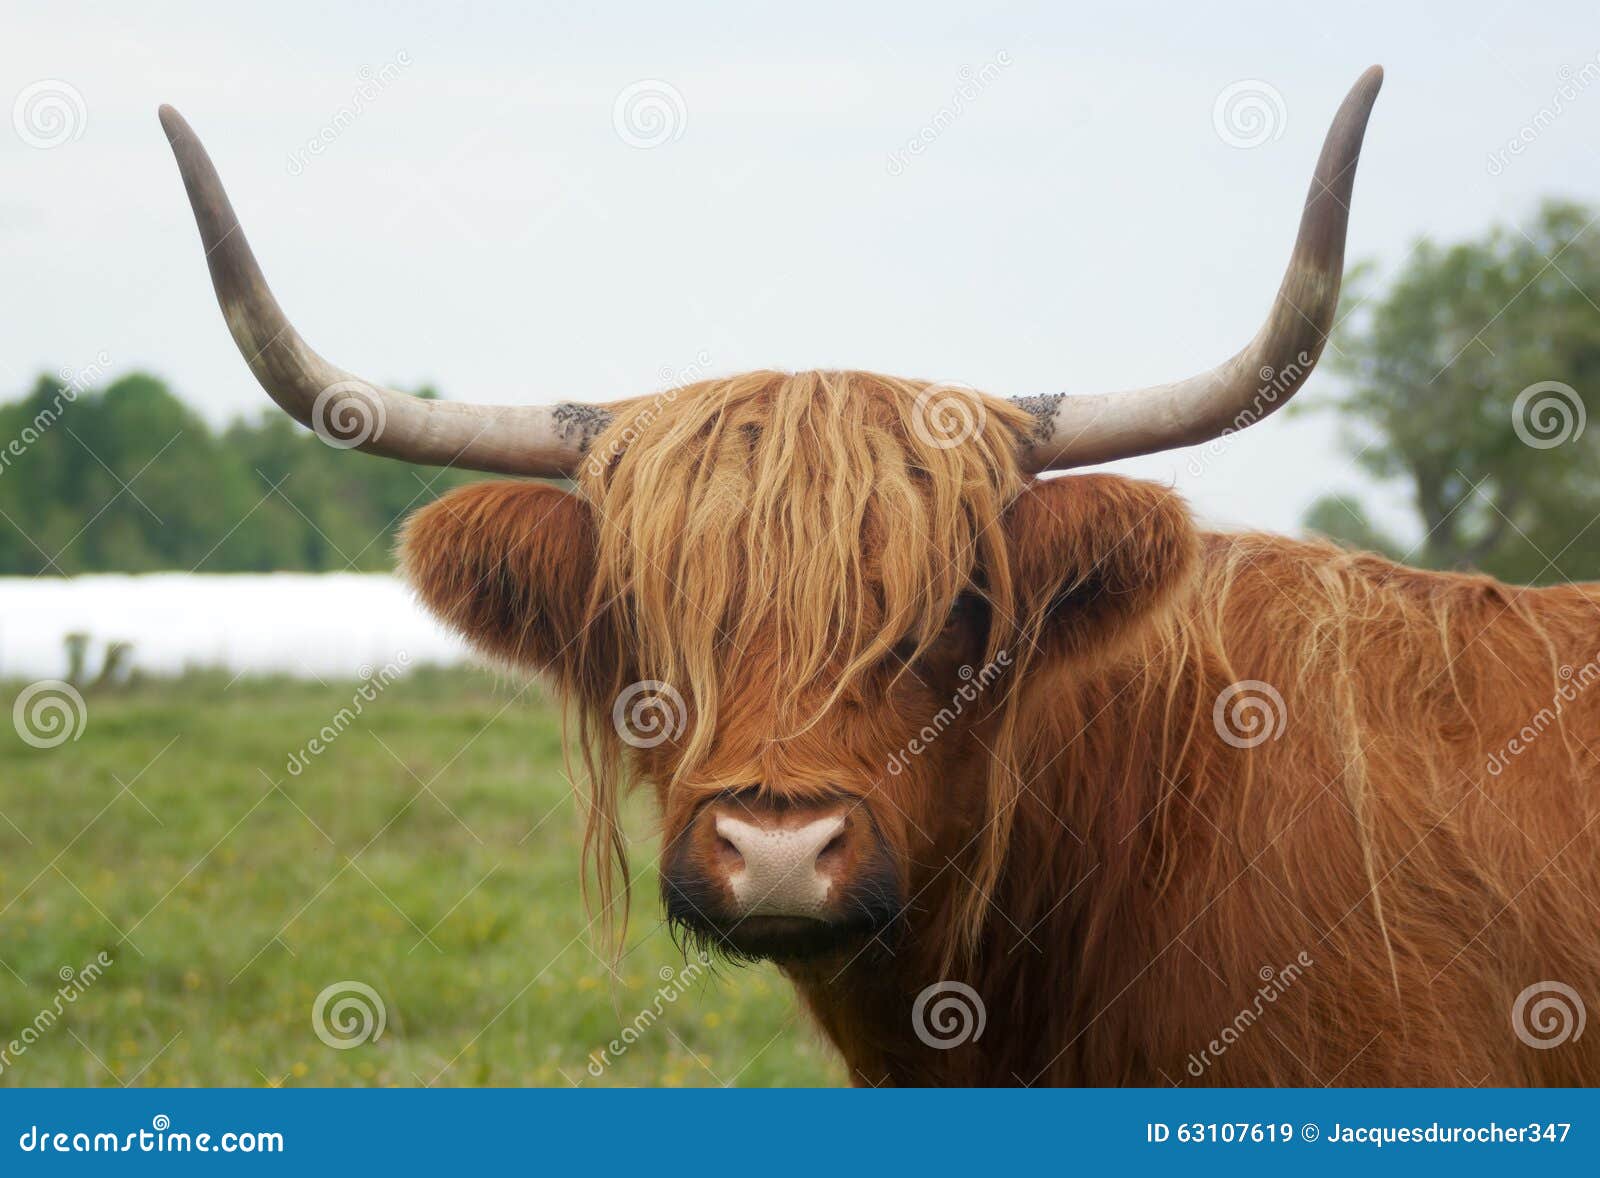 brown horned cow long horns grass